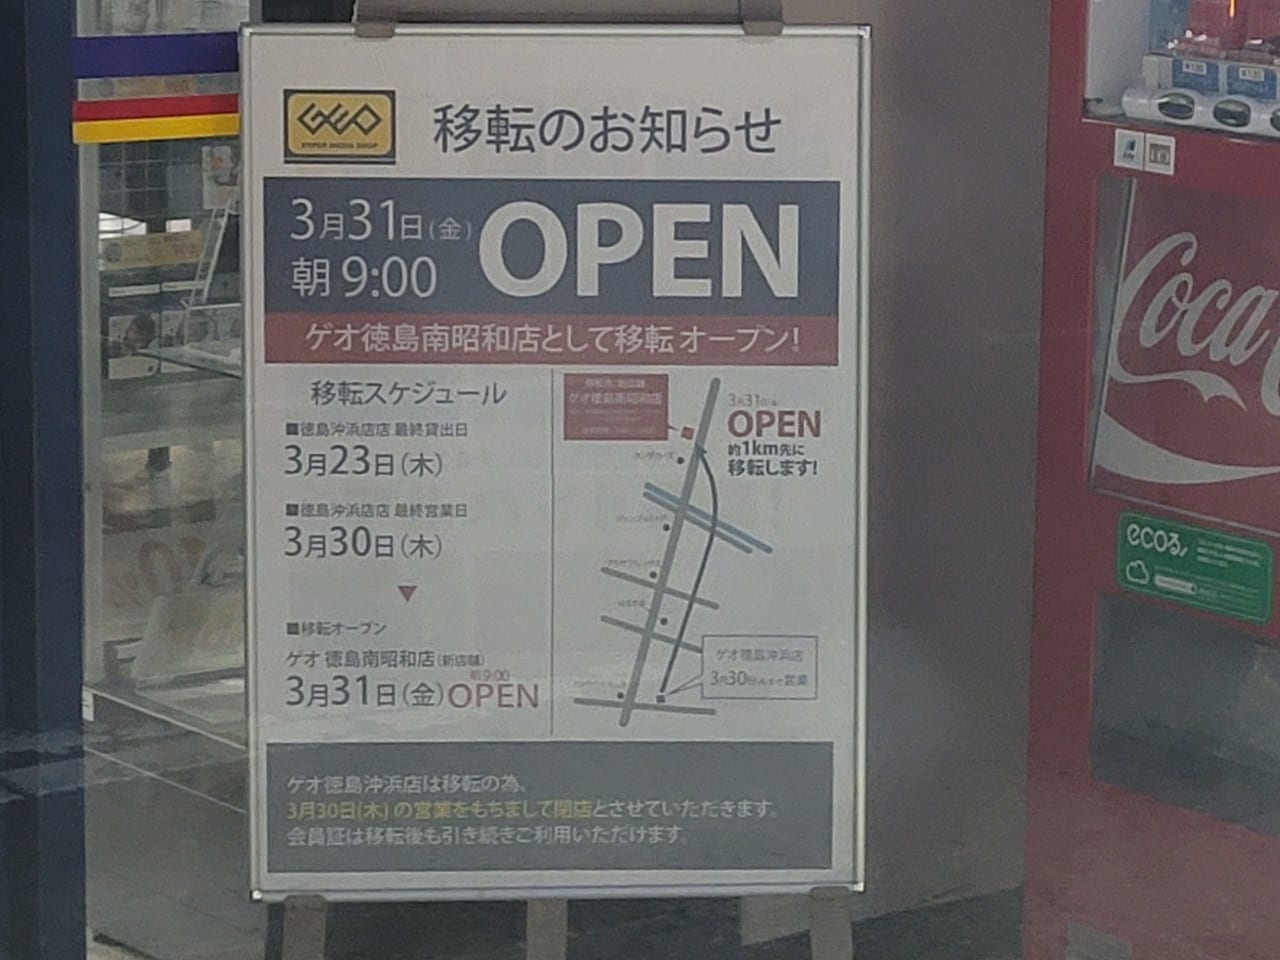 「ゲオ徳島沖浜店」にあった移転オープンについての告知物